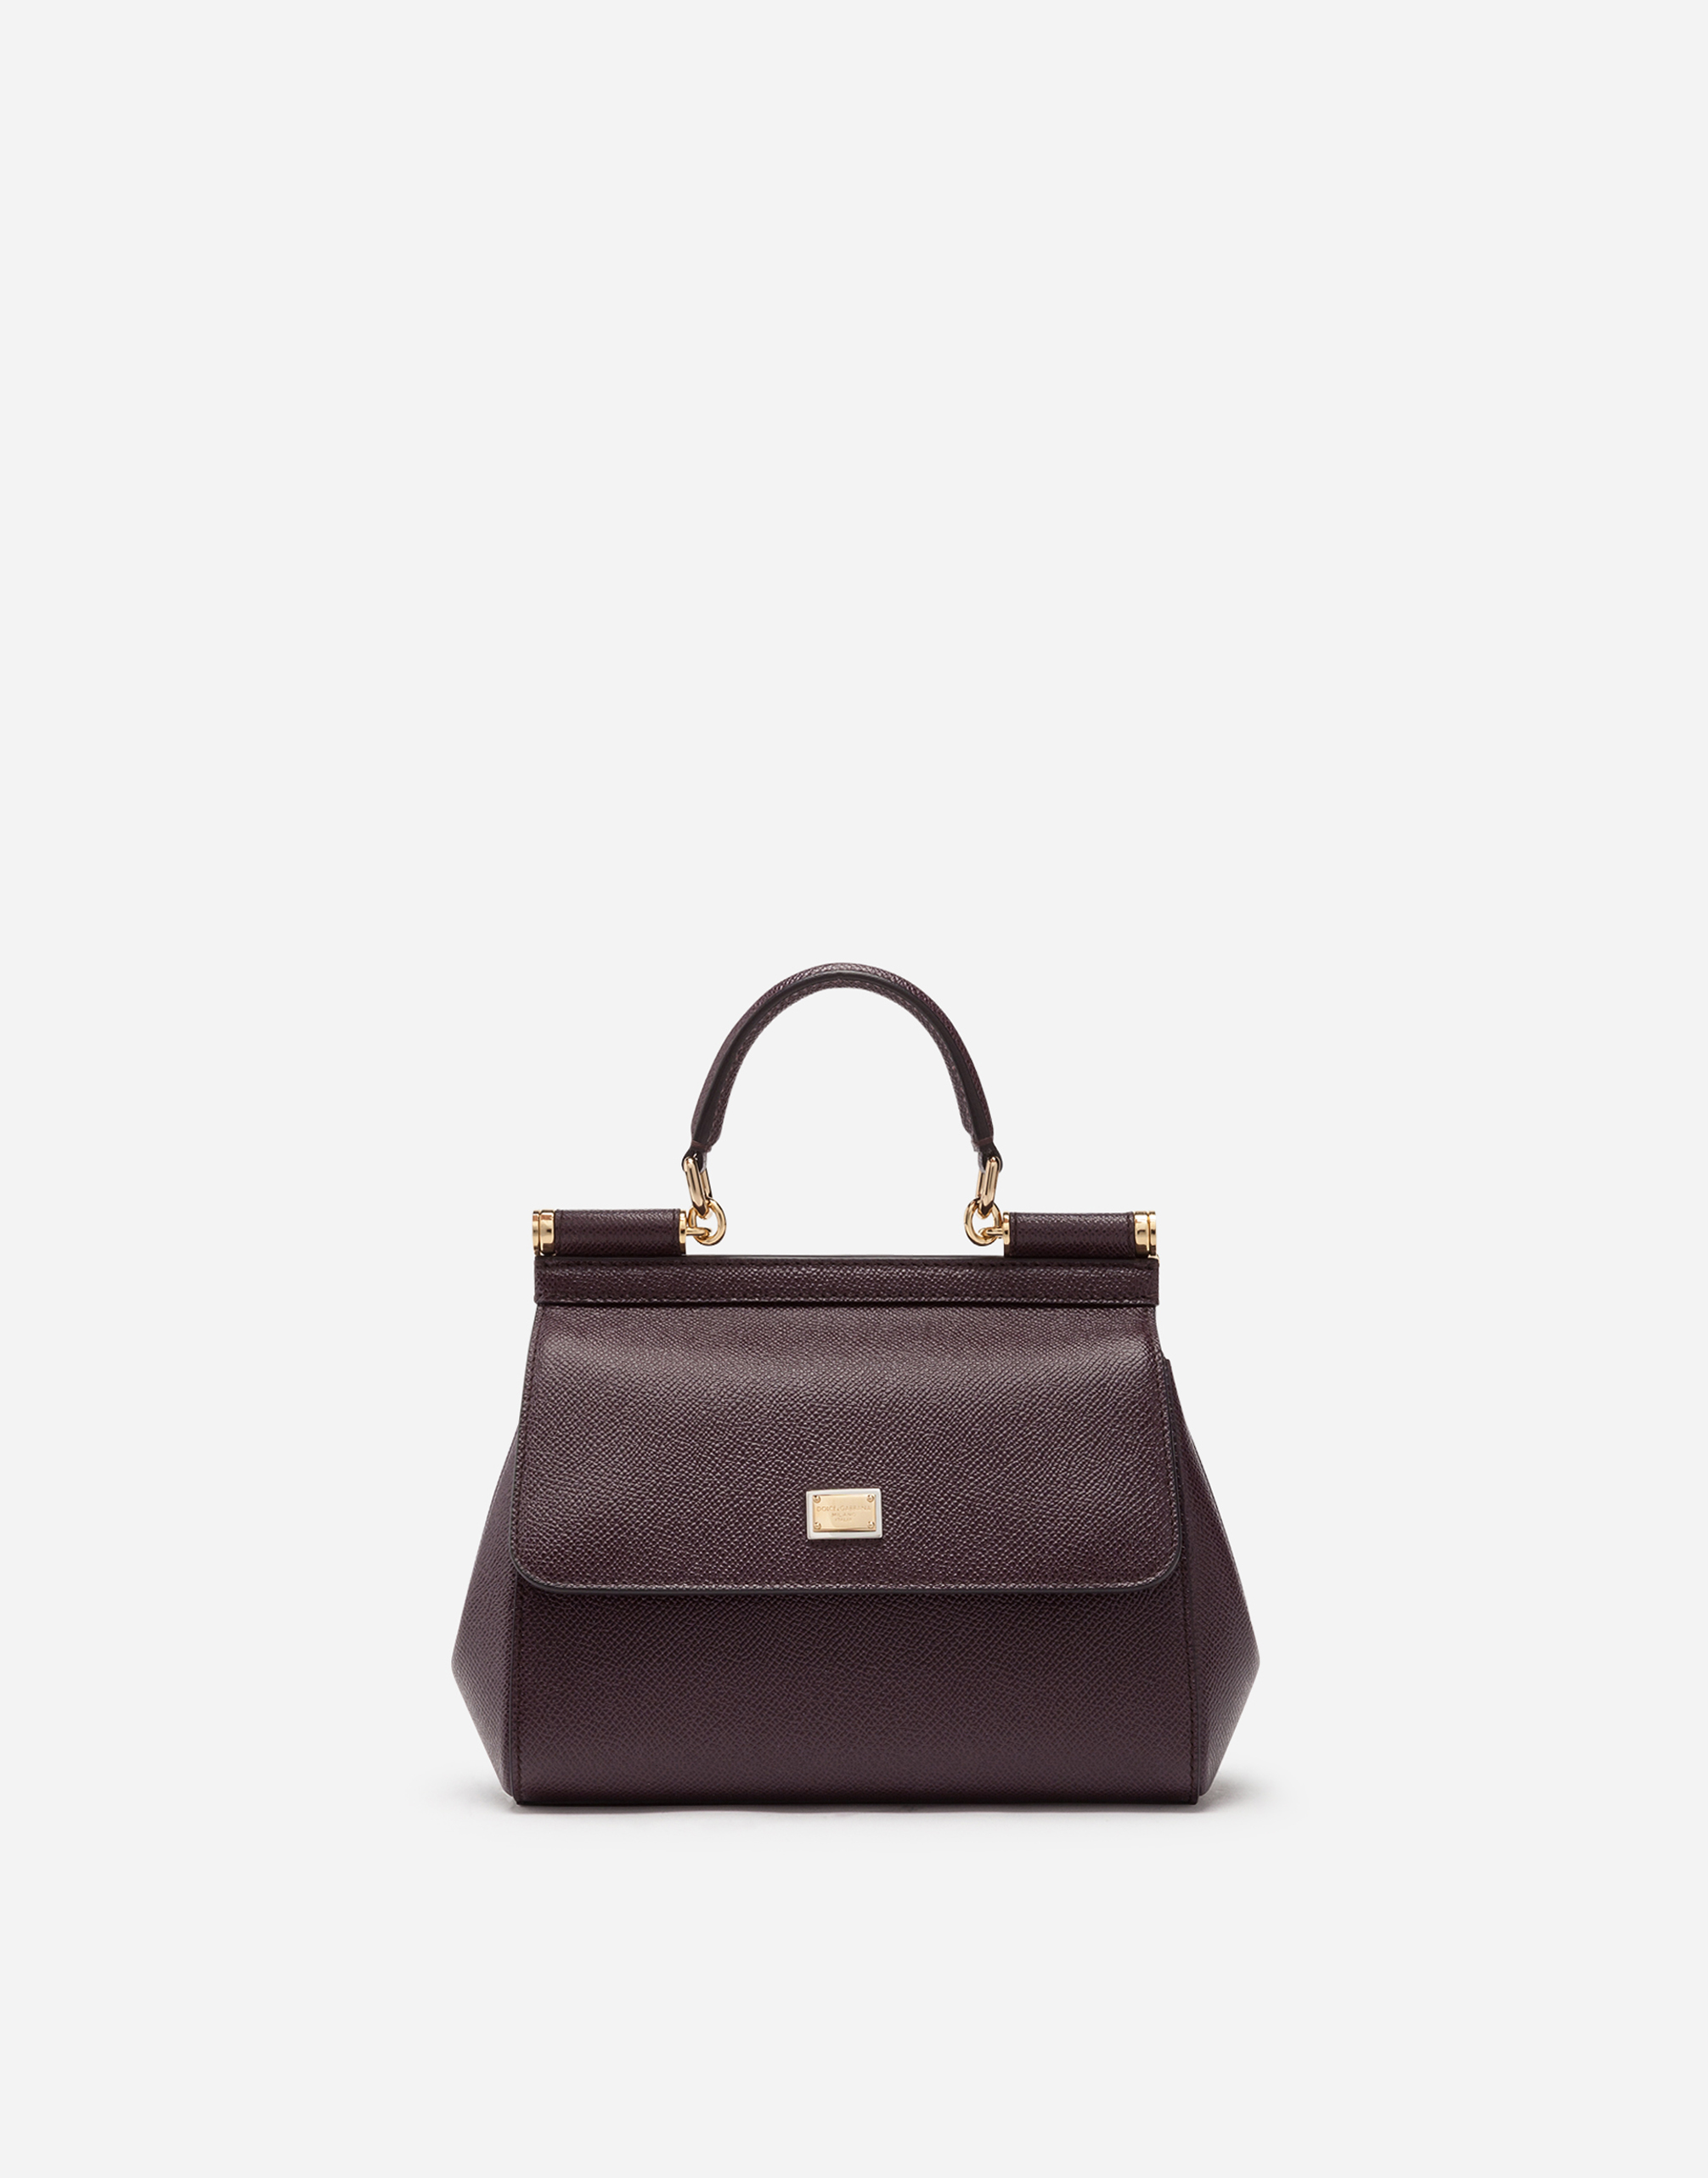 Medium Sicily handbag in Purple